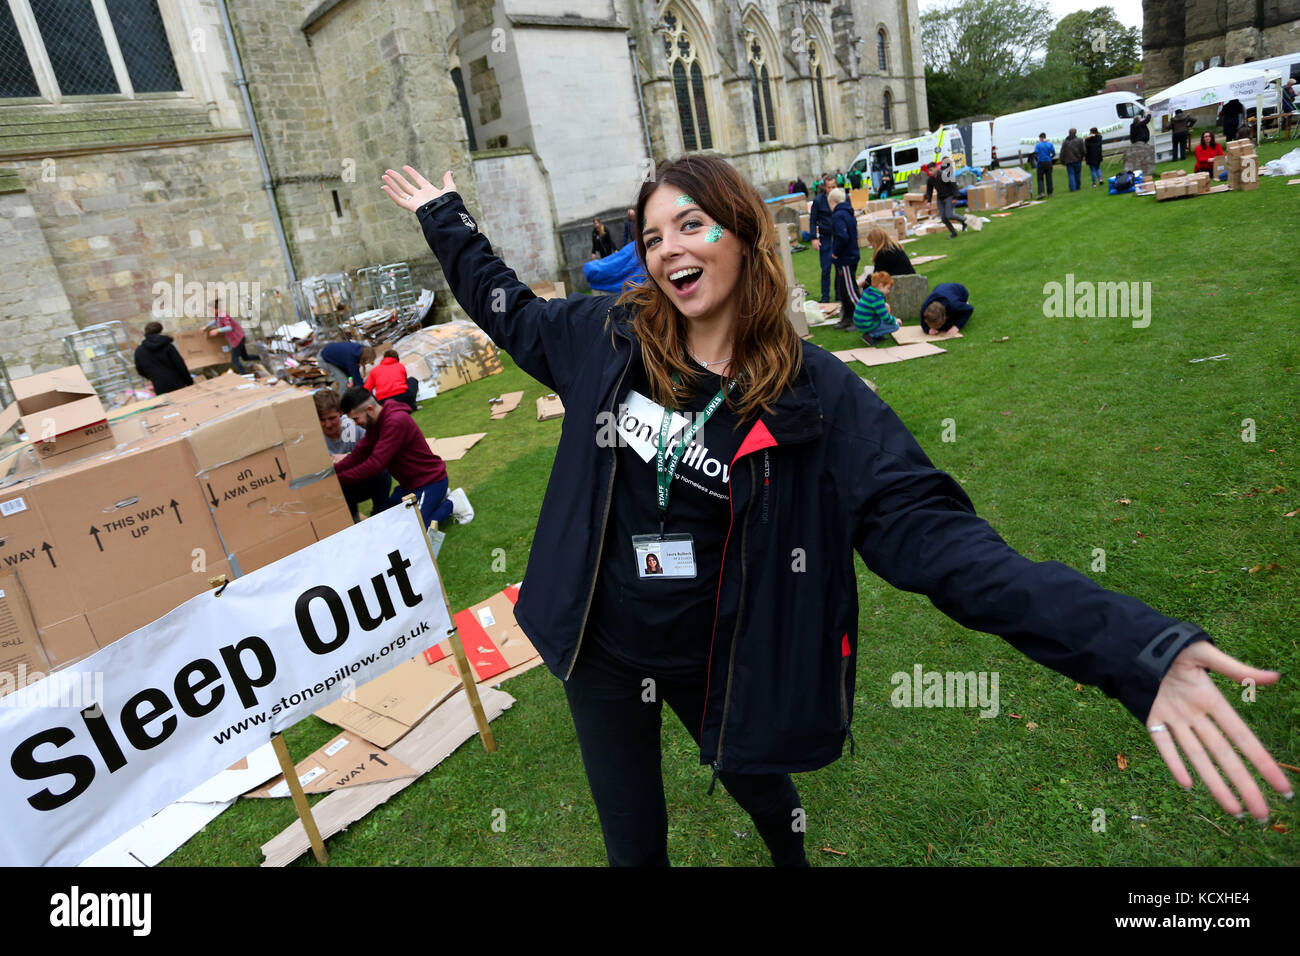 La grande cathédrale de Chichester à sleepout, West Sussex, UK. un événement annuel pour amasser des fonds pour les sans-abri la charité. stonepillow Banque D'Images